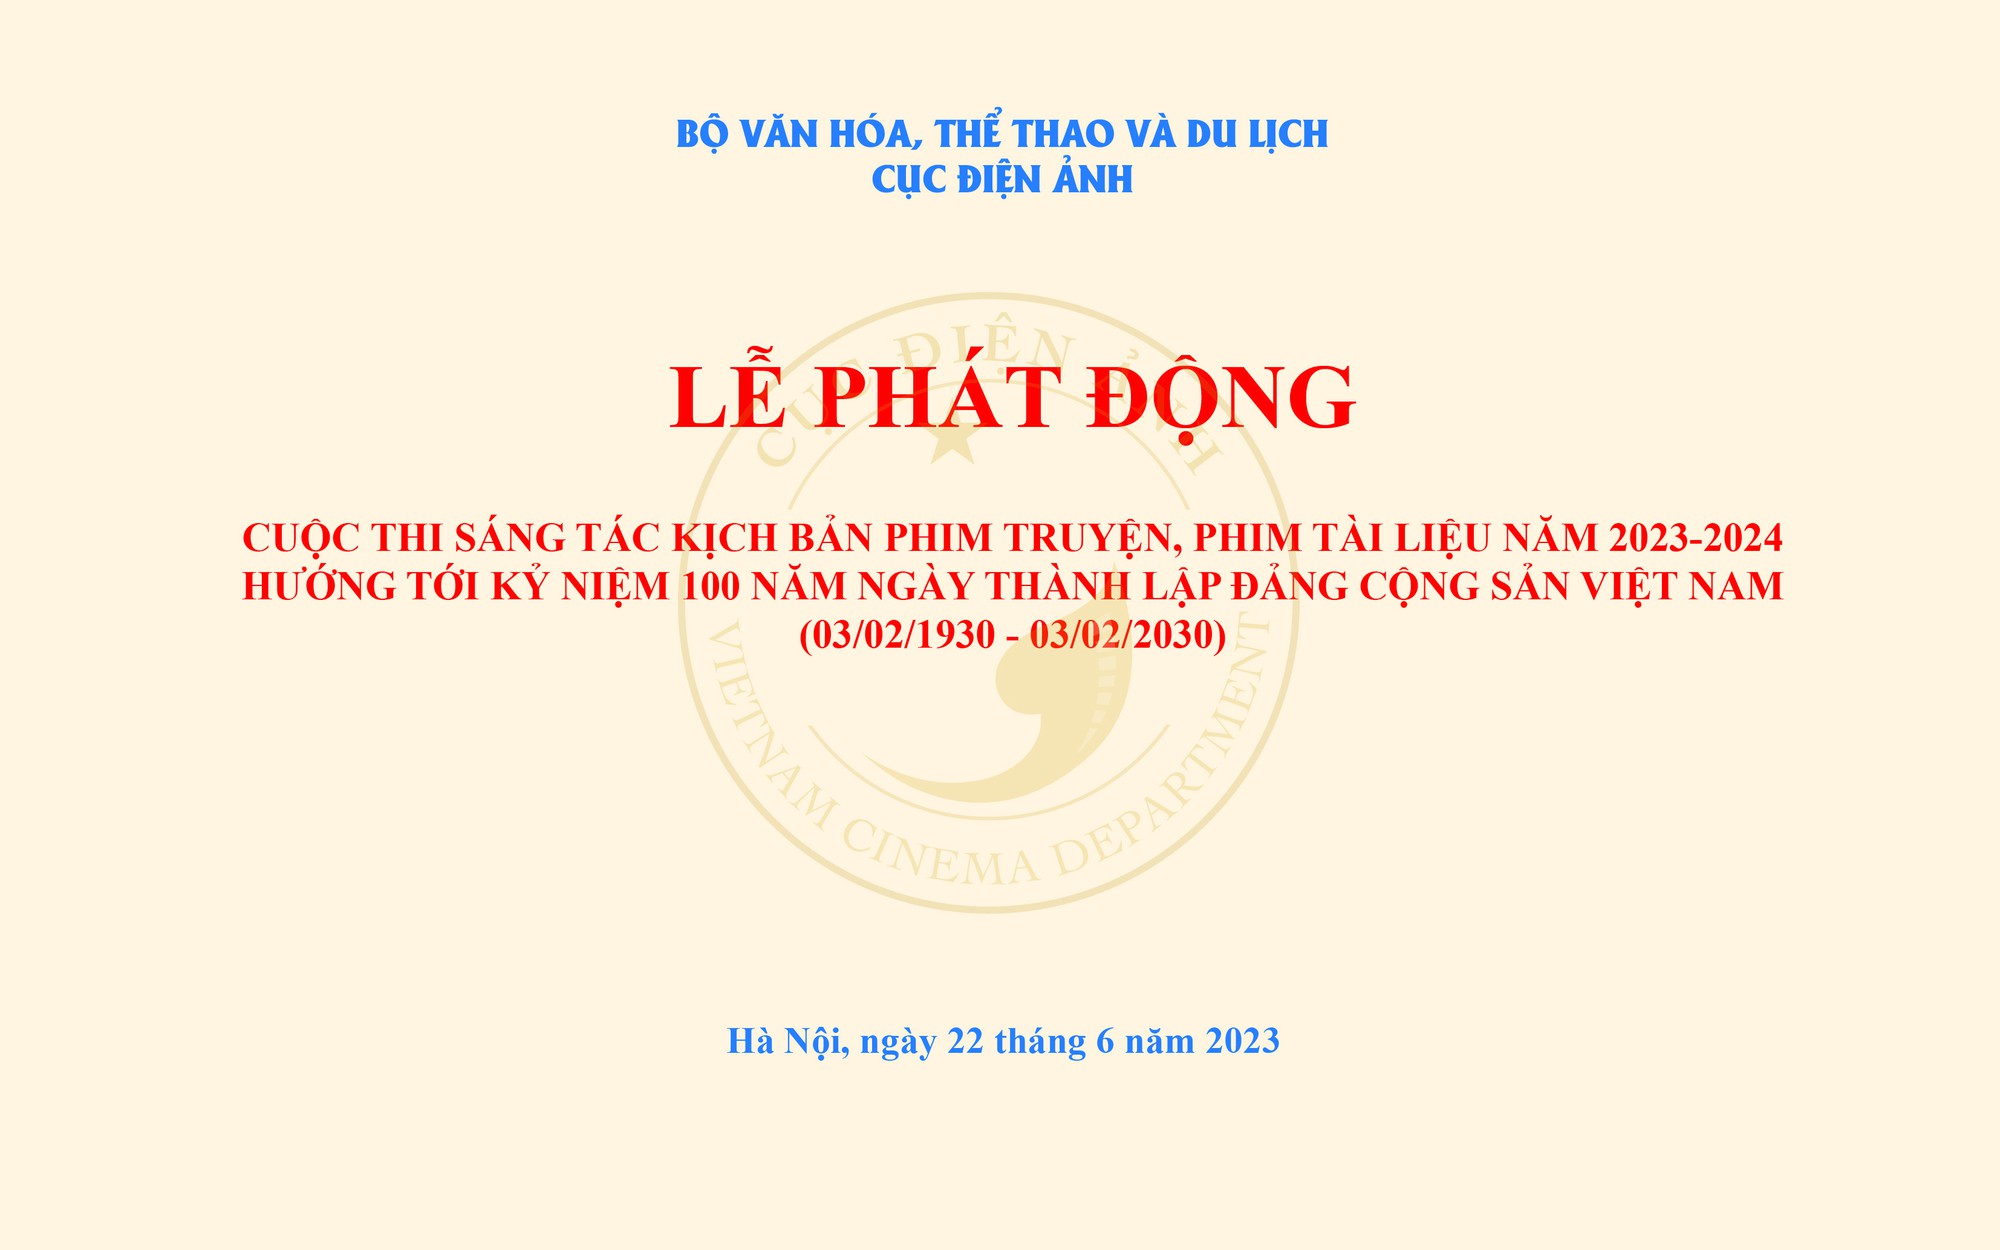 Mời gửi kịch bản và thời hạn tham dự Cuộc thi “Sáng tác kịch bản phim truyện, phim tài liệu năm 2023- 2024 hướng tới kỷ niệm 100 năm Ngày thành lập Đảng Cộng sản Việt Nam